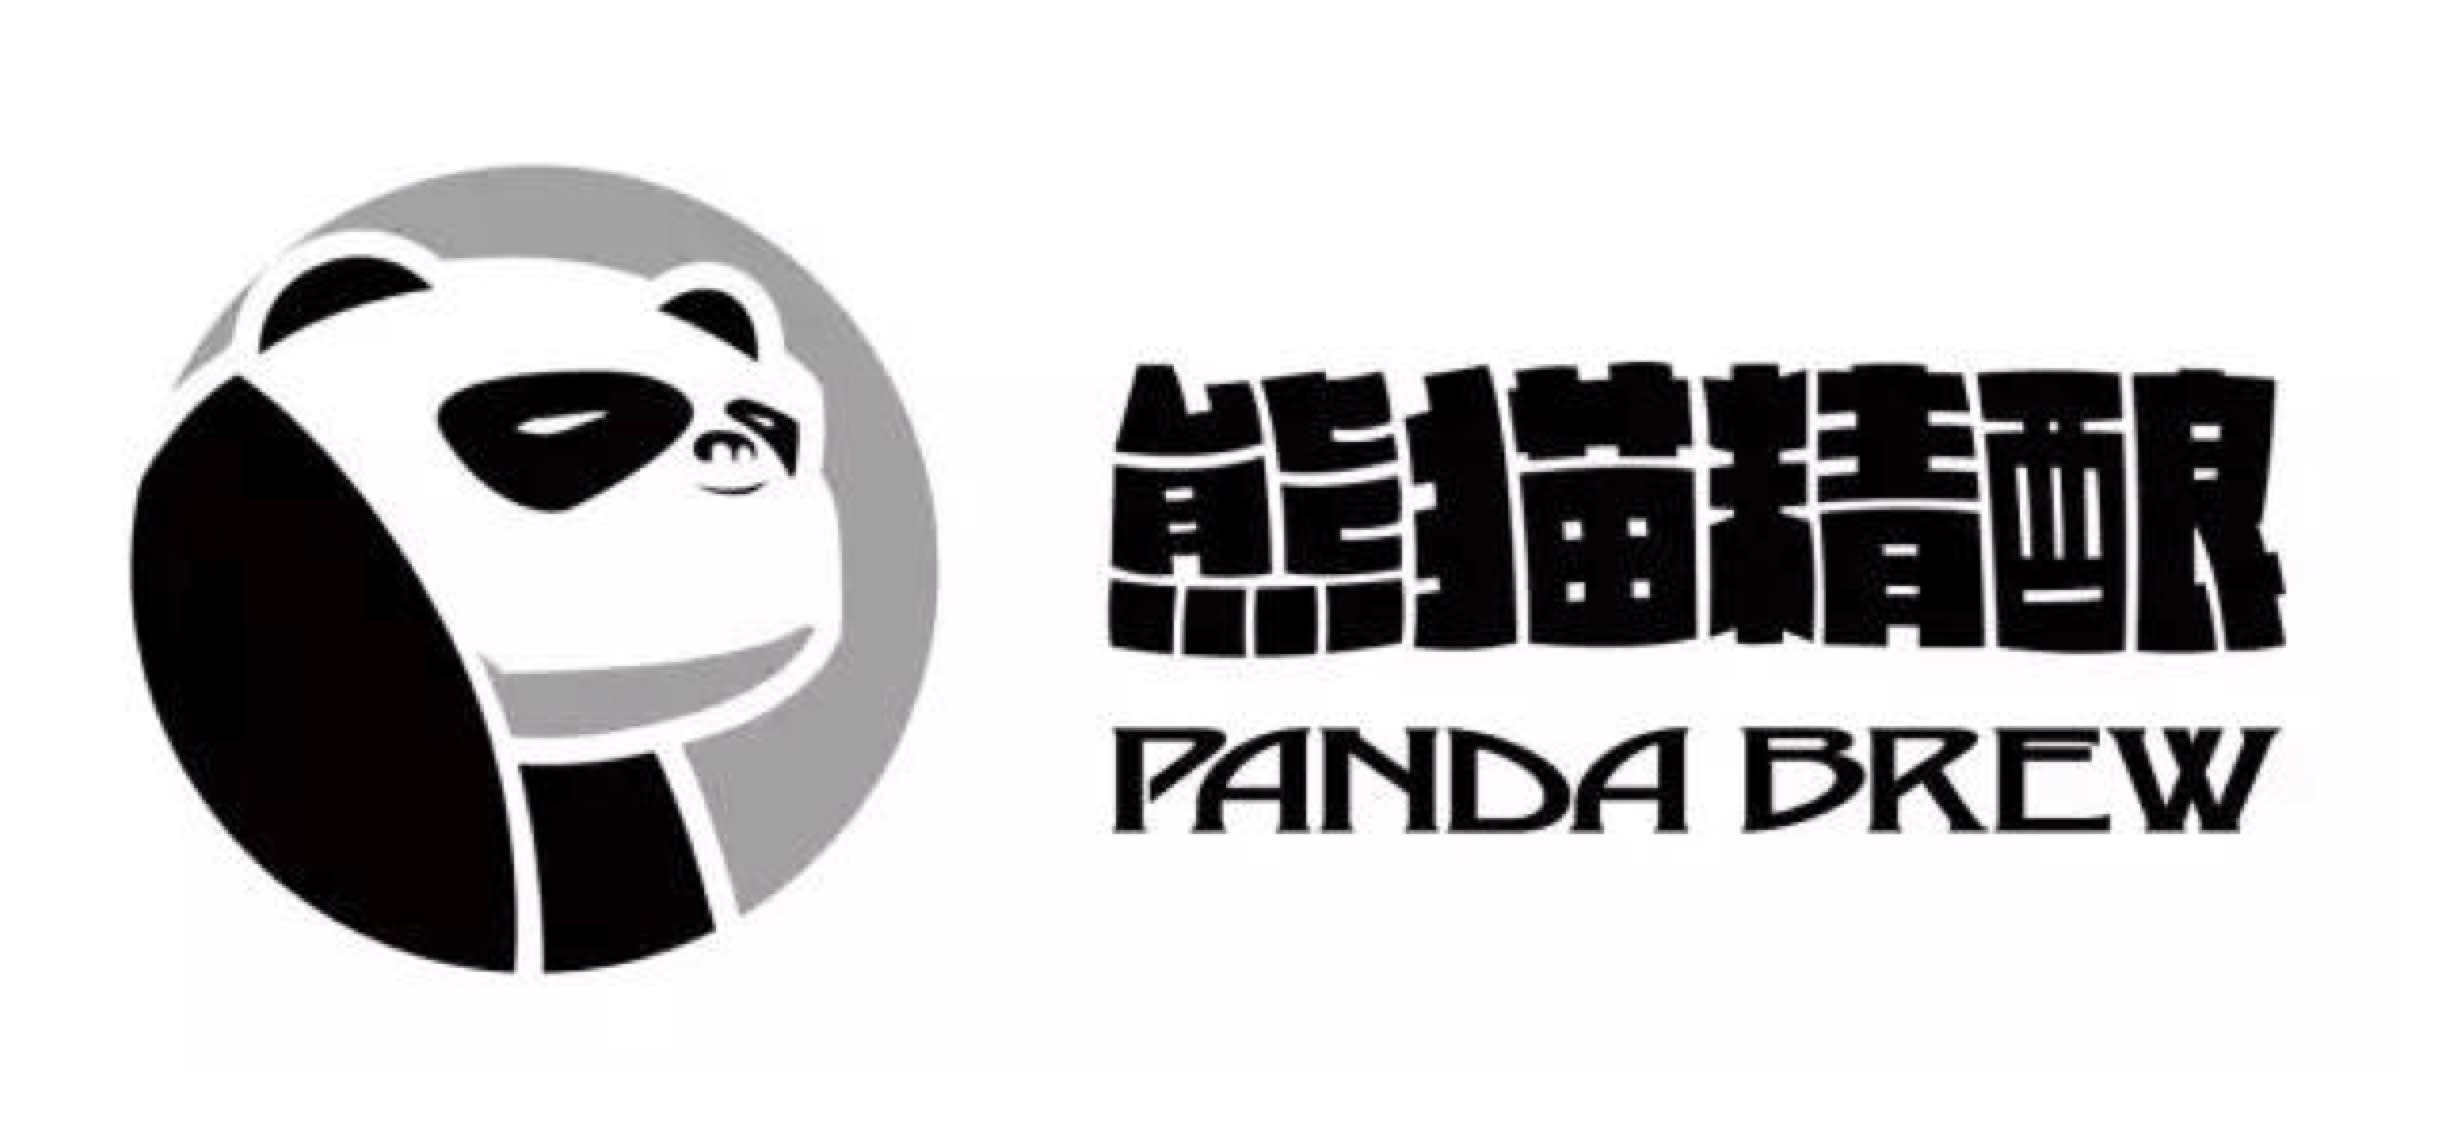 Panda Brew logo